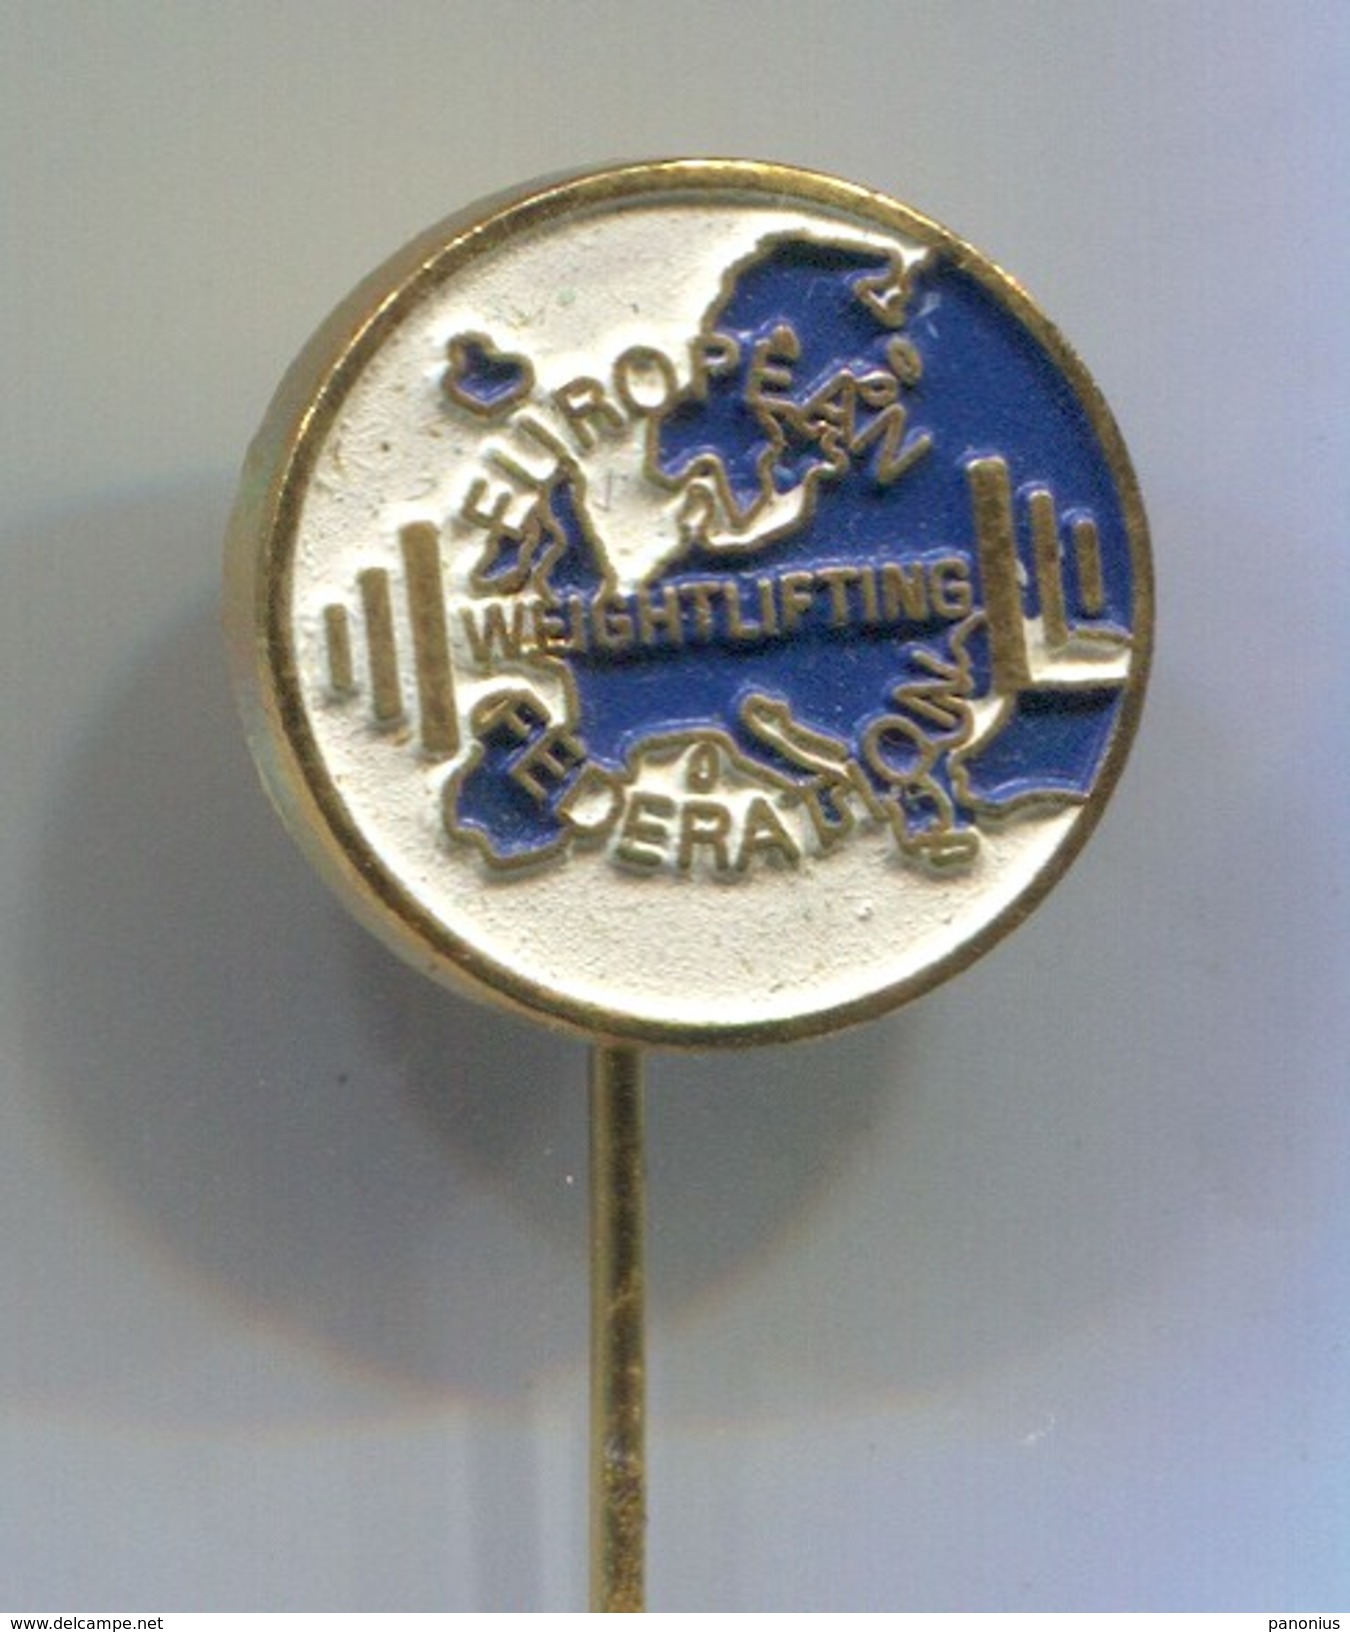 Weightlifting - EUROPEAN FEDERATION, Vintage Pin Badge, Abzeichen - Haltérophilie